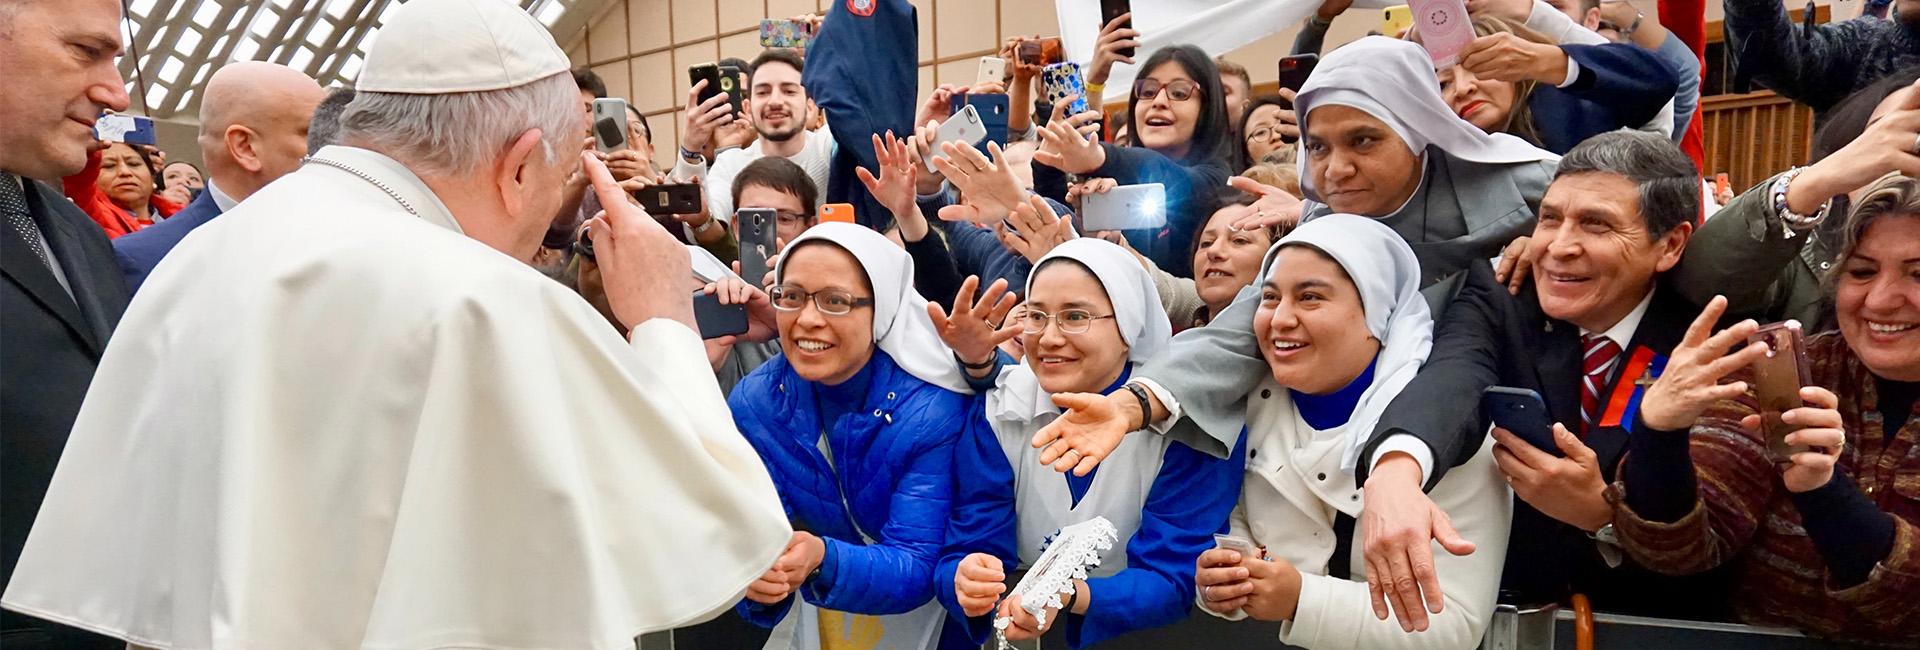 Francisco e a comunicação: um Papa de gestos e imagens